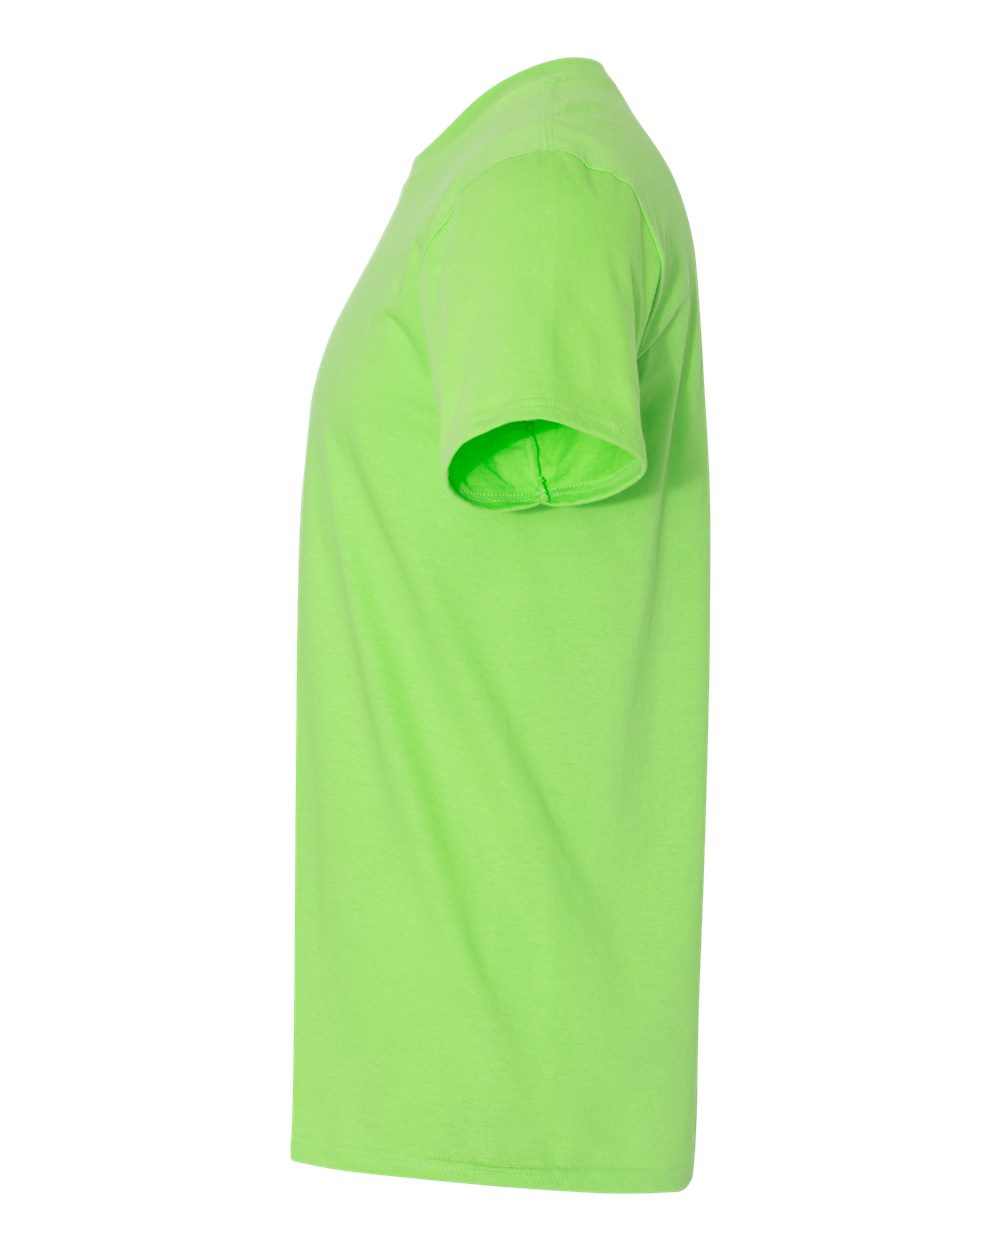 Gildan Softstyle® T-Shirt 64000 #color_Lime